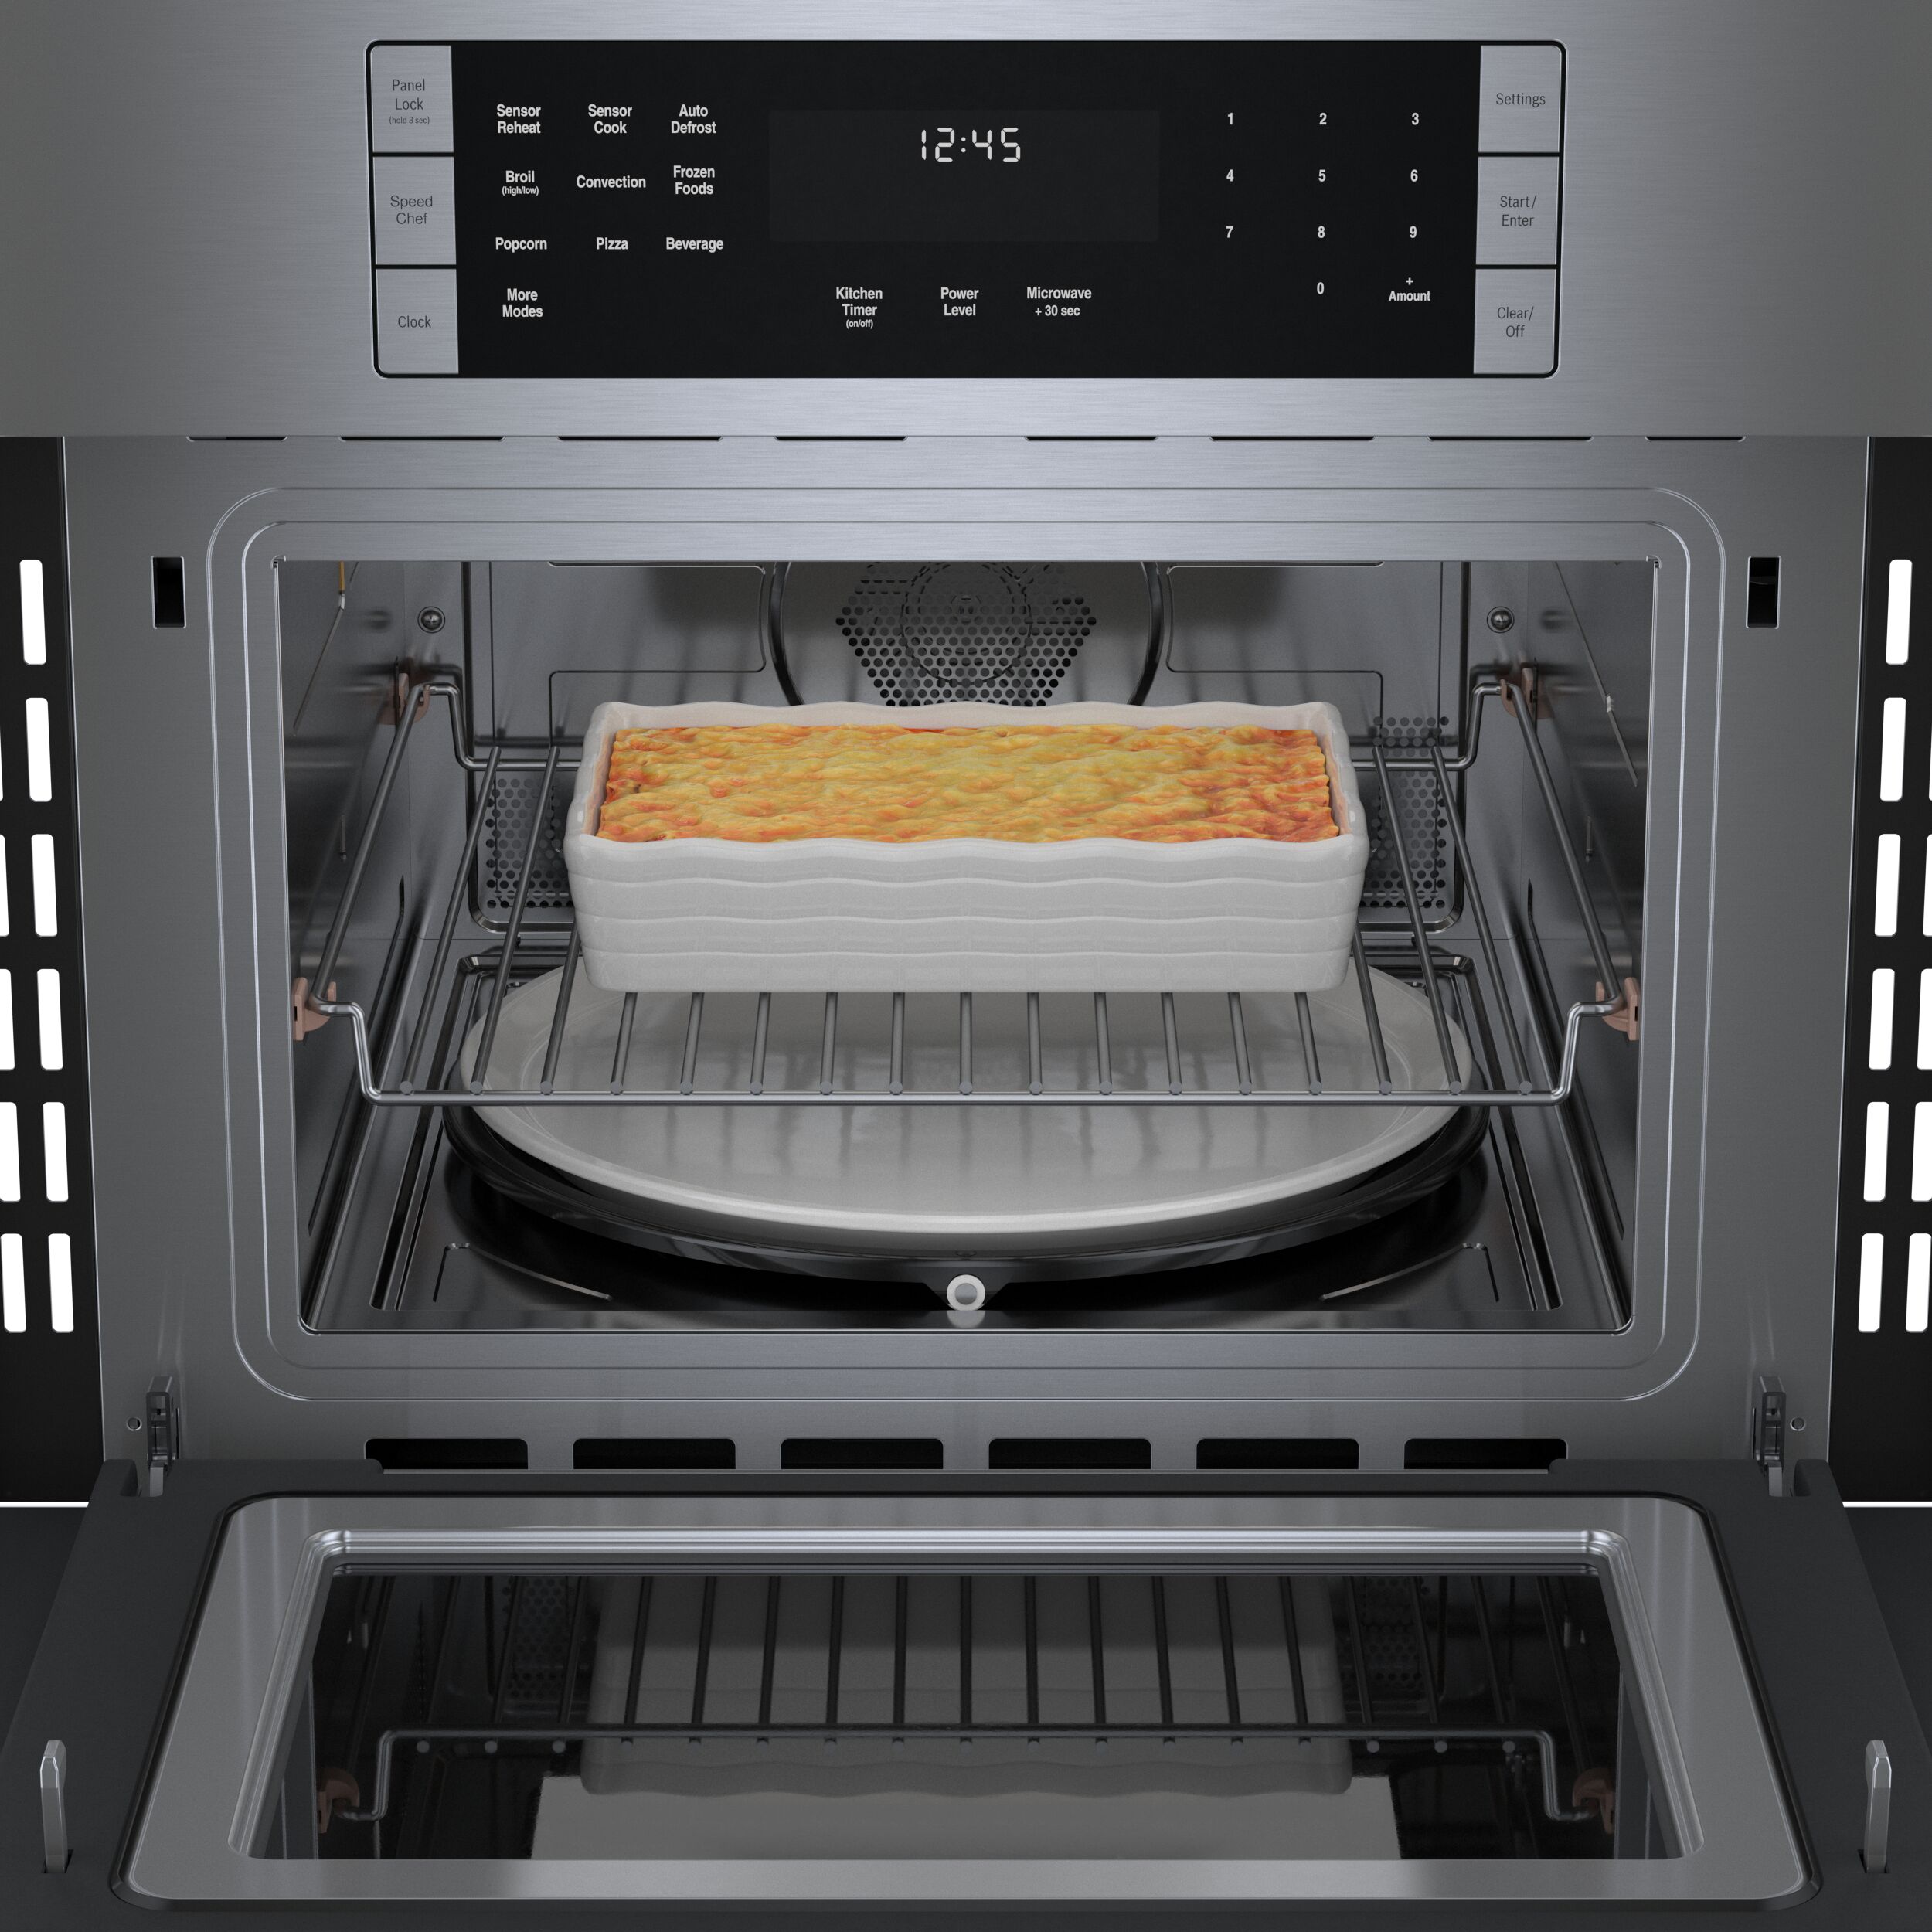  500 Watt Microwave Oven